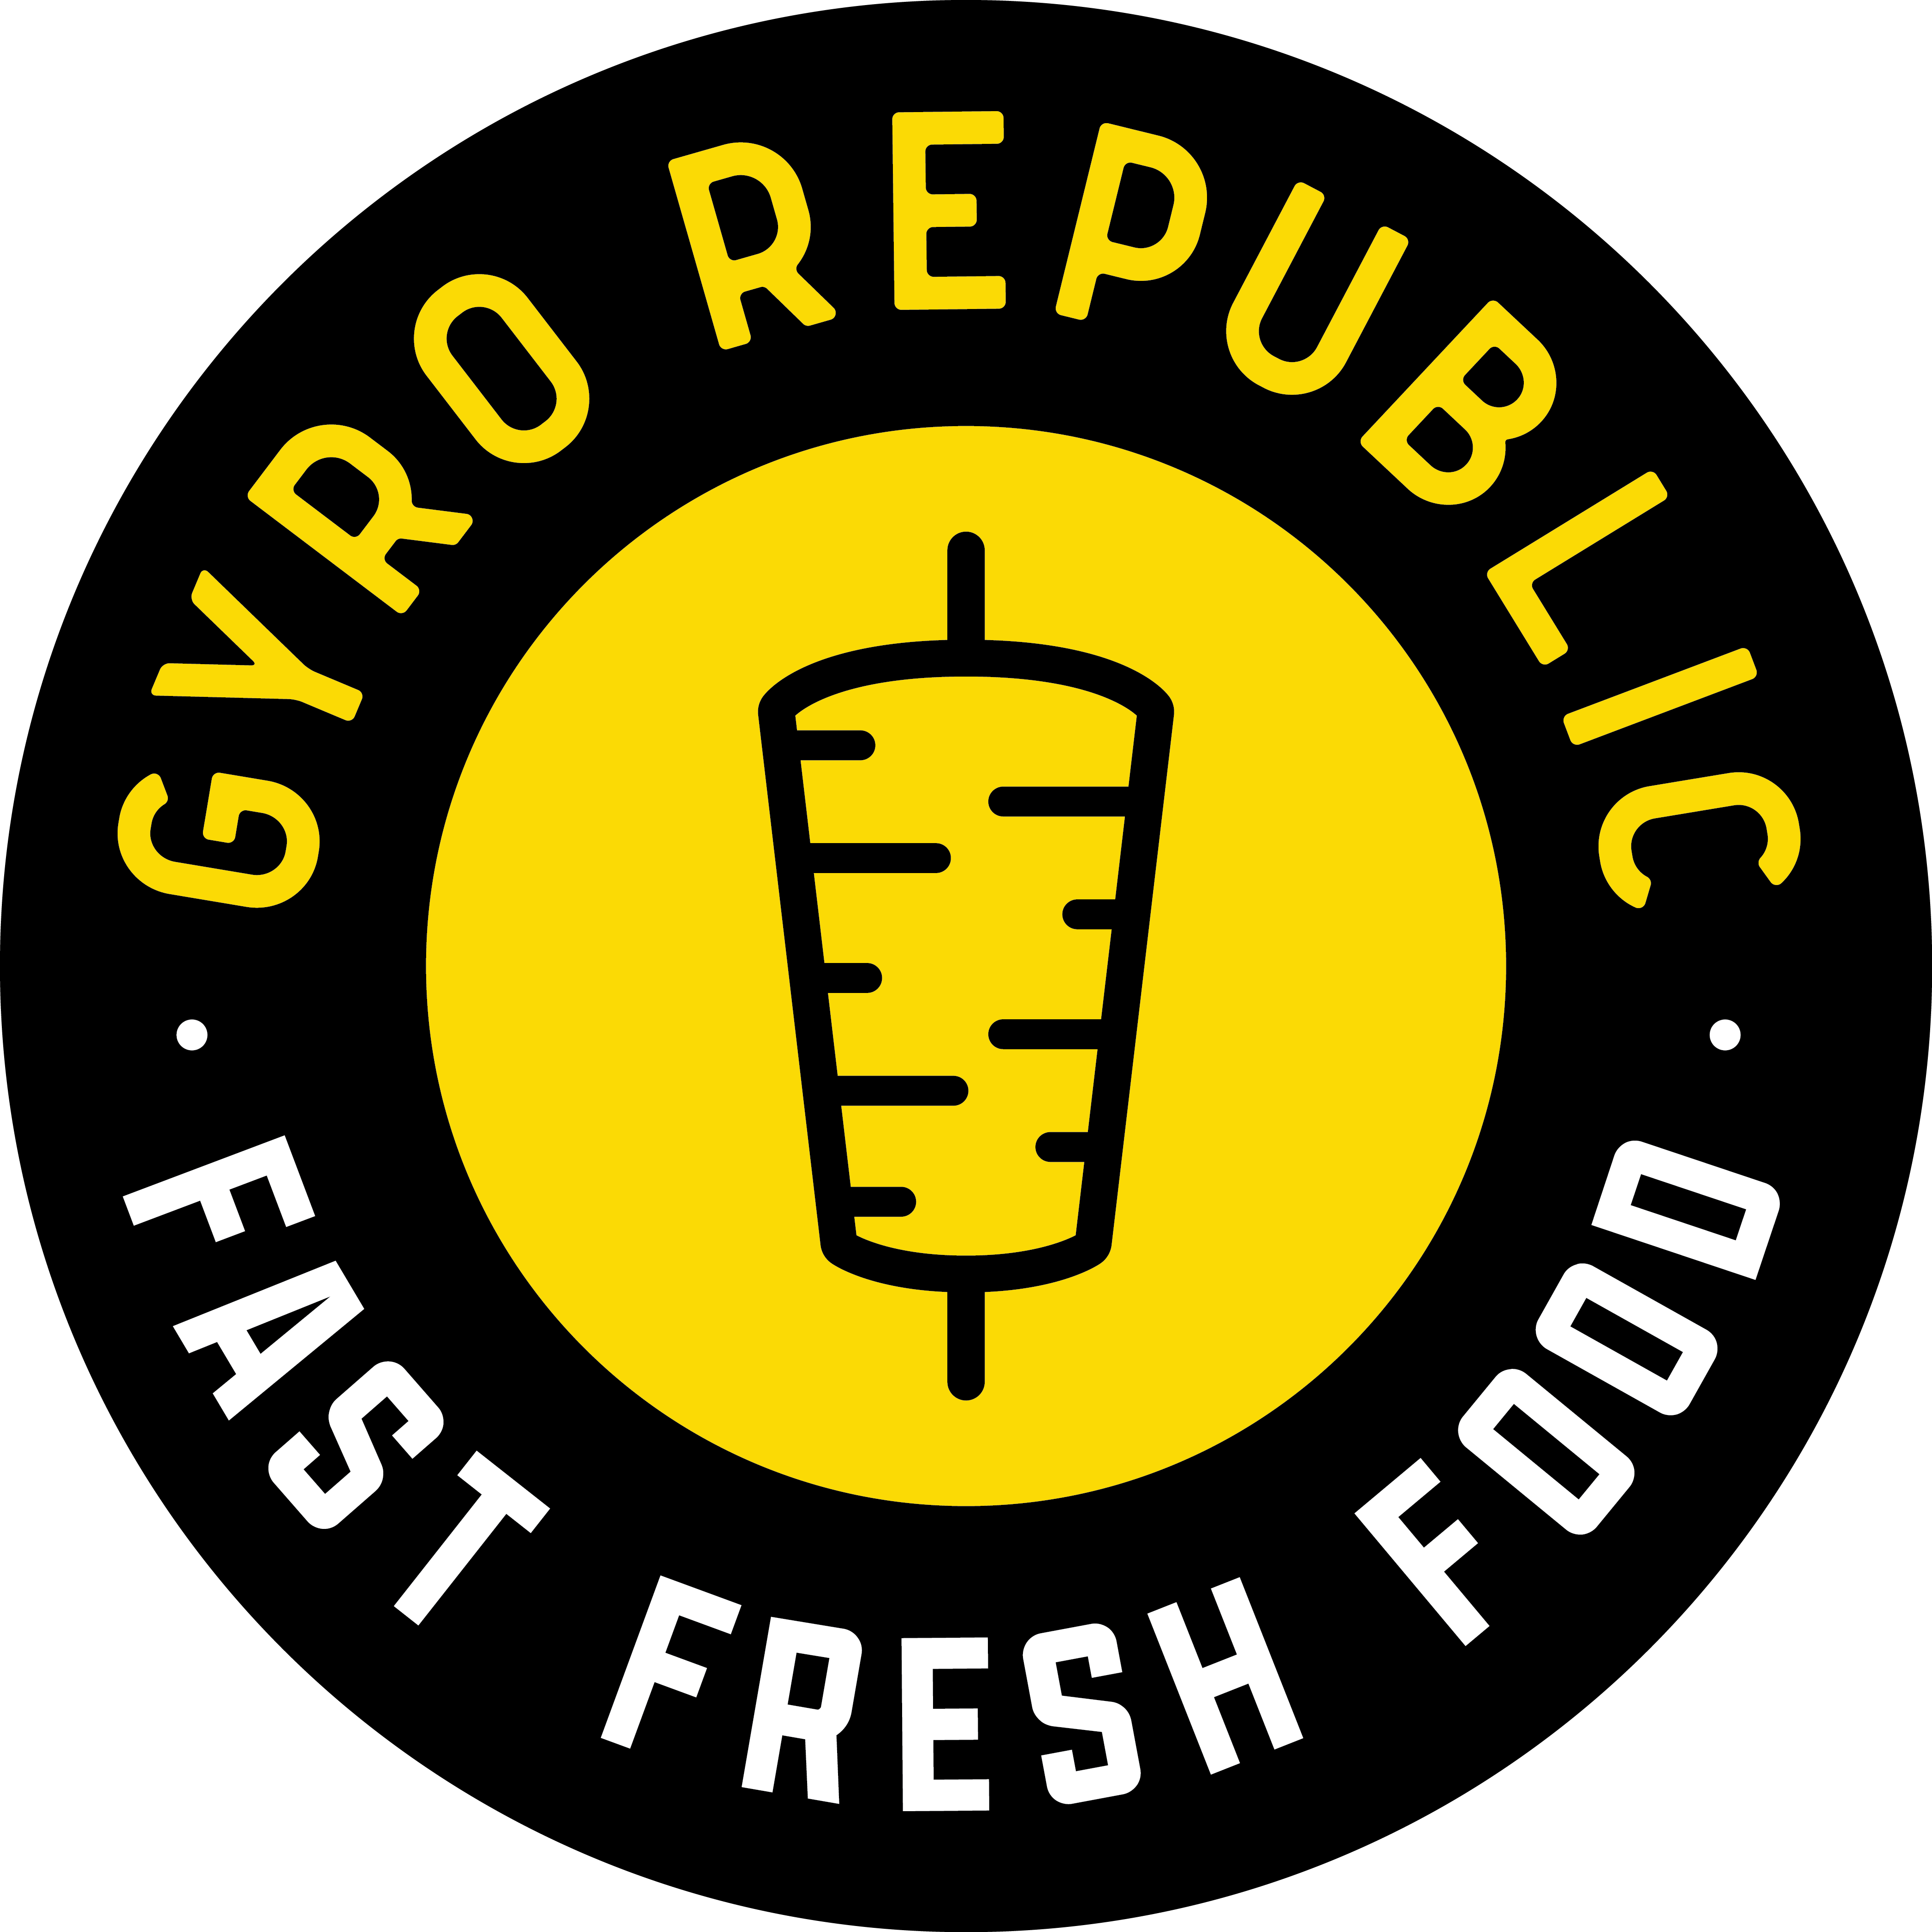 Gyro Republic logo